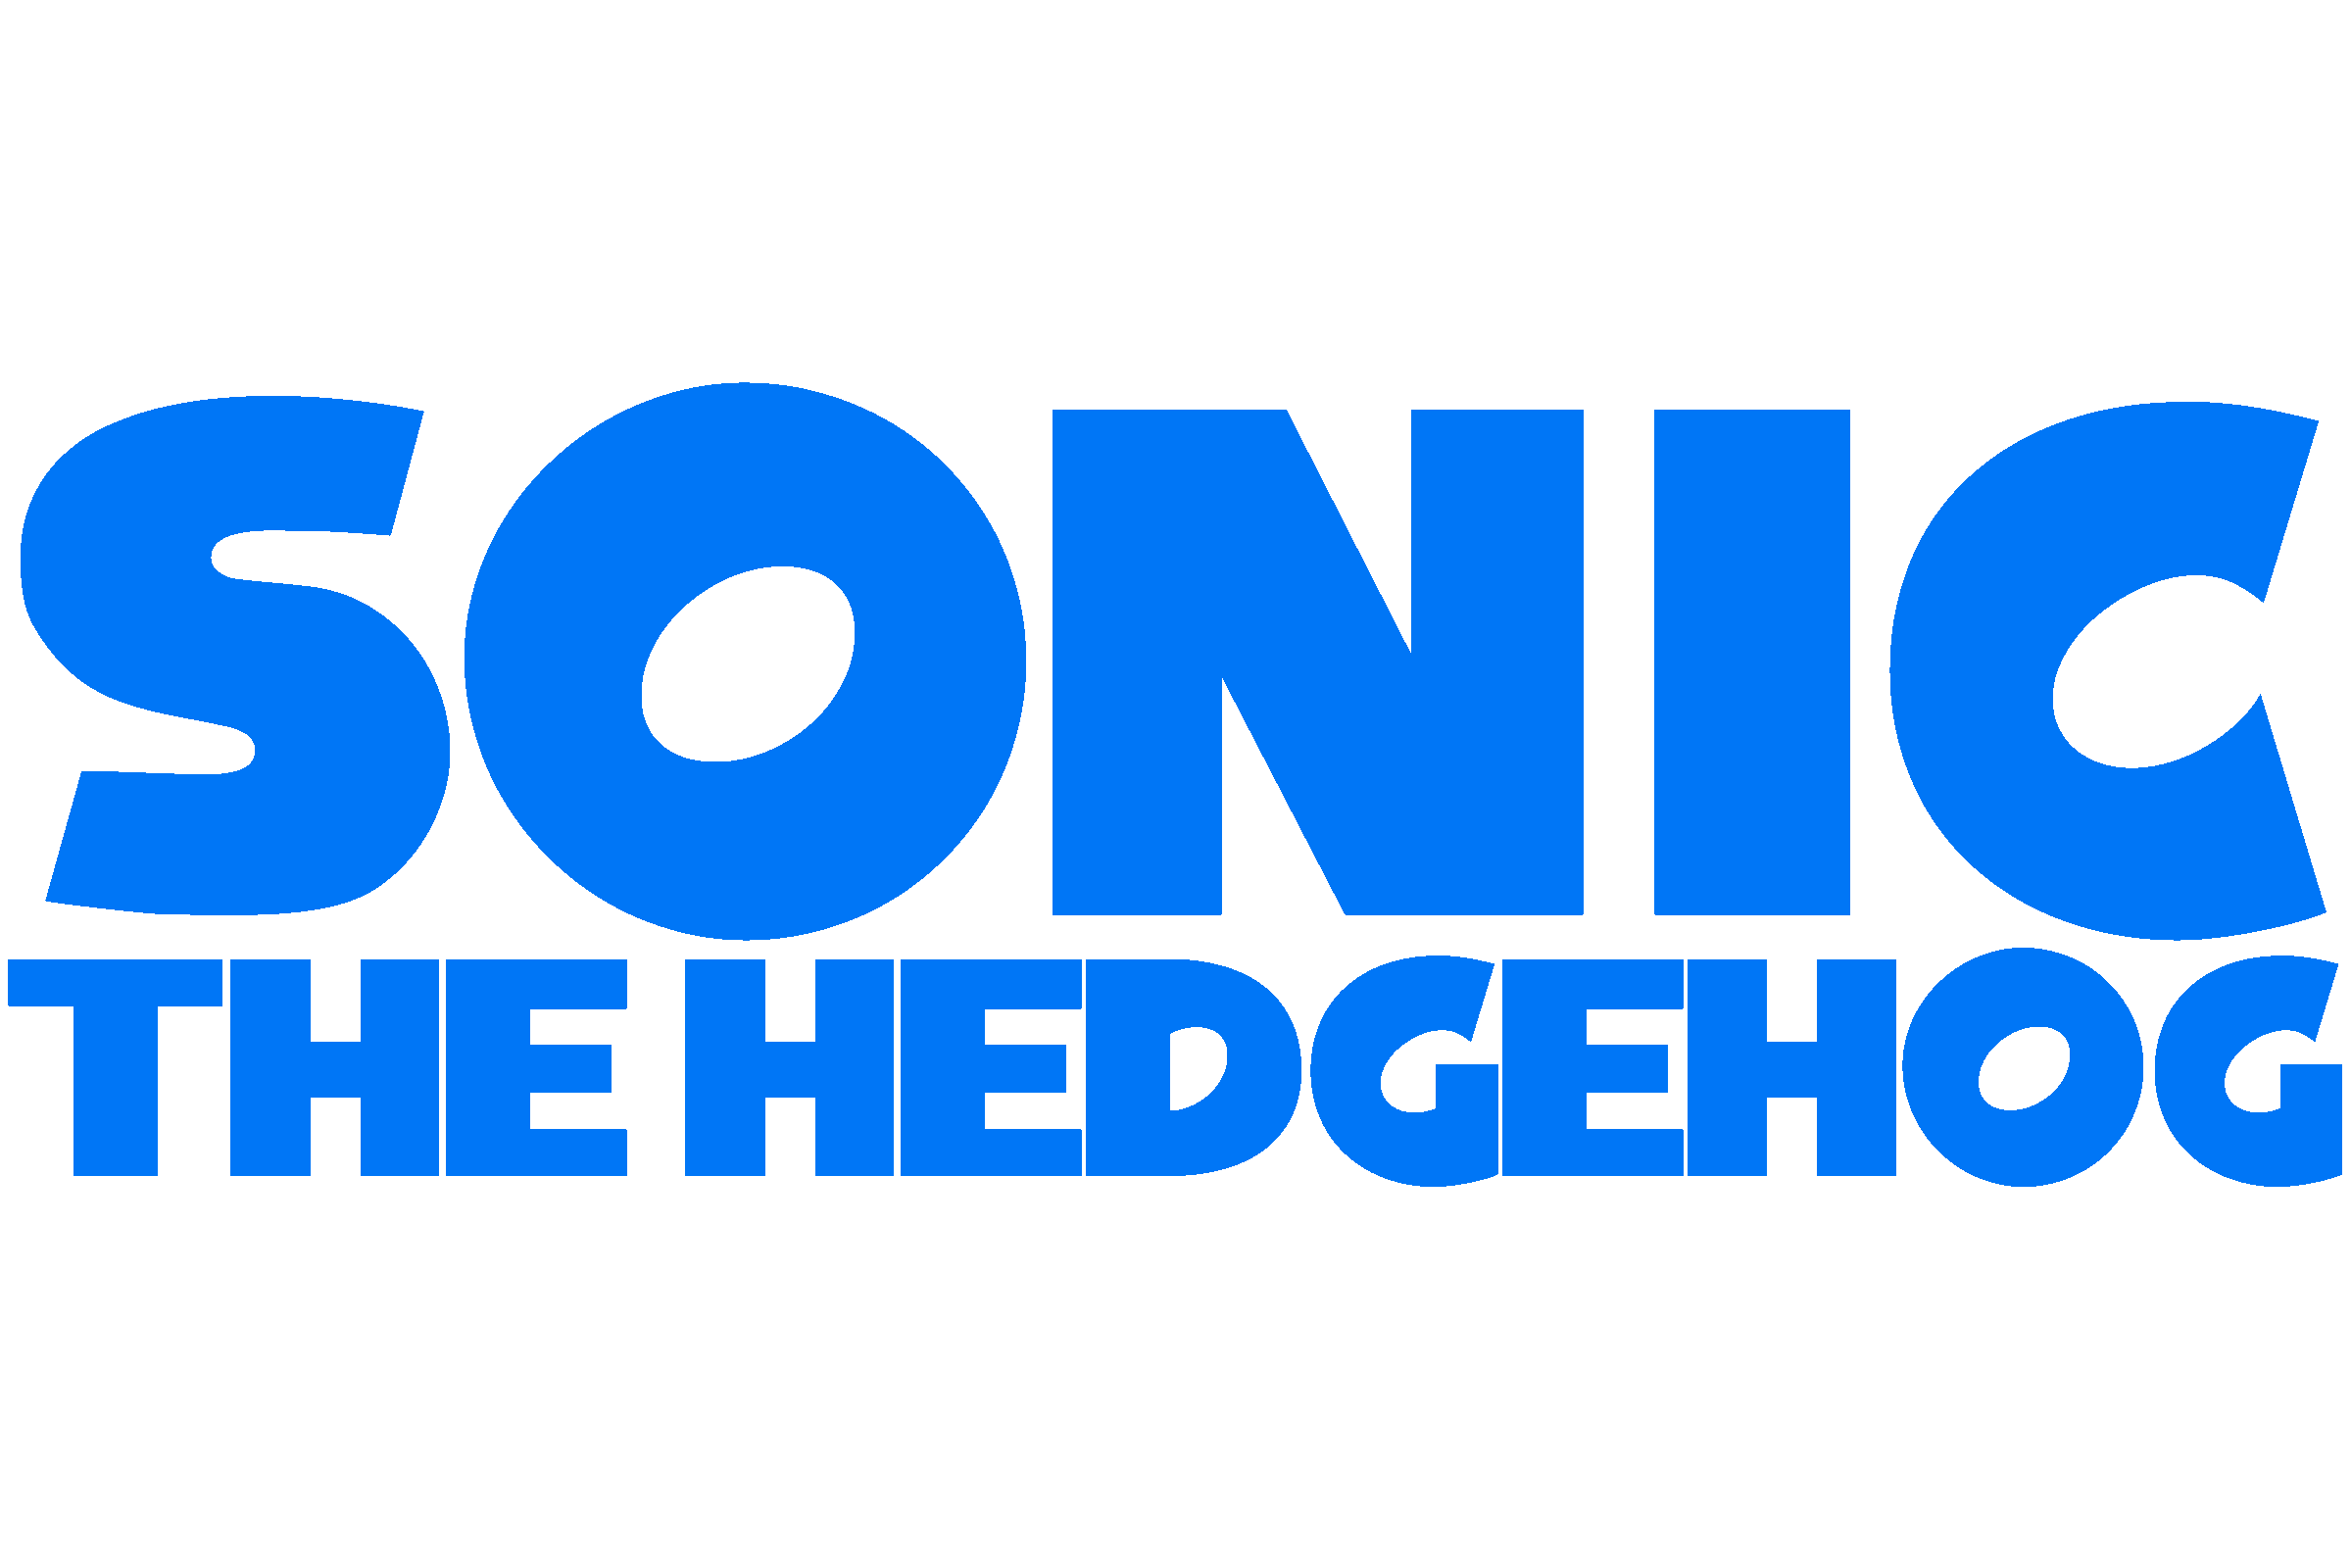 sonic the hedgehog  Sonic The Hedgehog (1991) - Sonic the